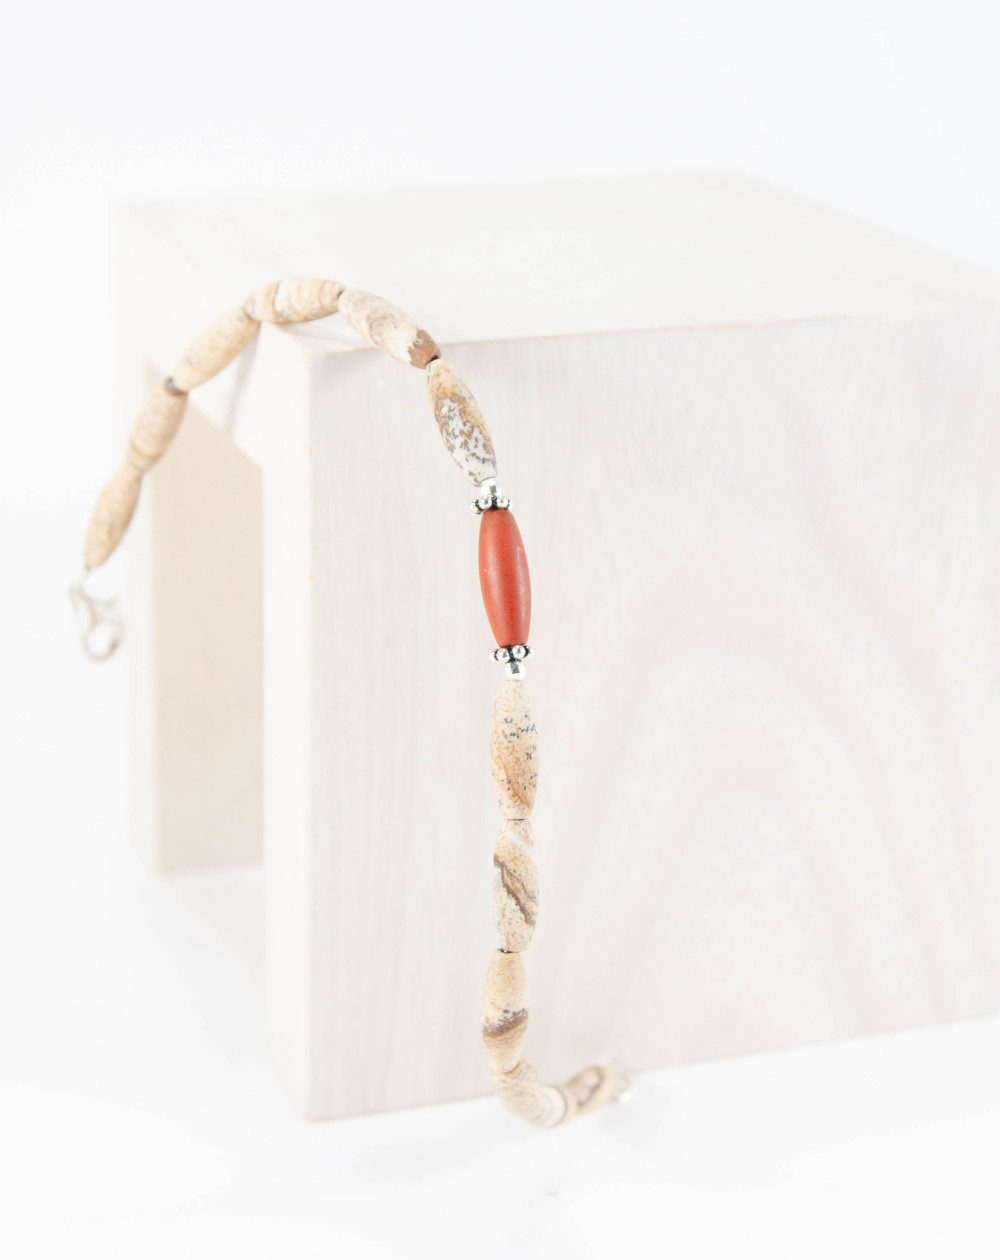 Bracelet en Jaspe Paysage et Jaspe Rouge, câble d'acier gainé, Sanùk Création, Créateurs Bijoutiers Pays Basque